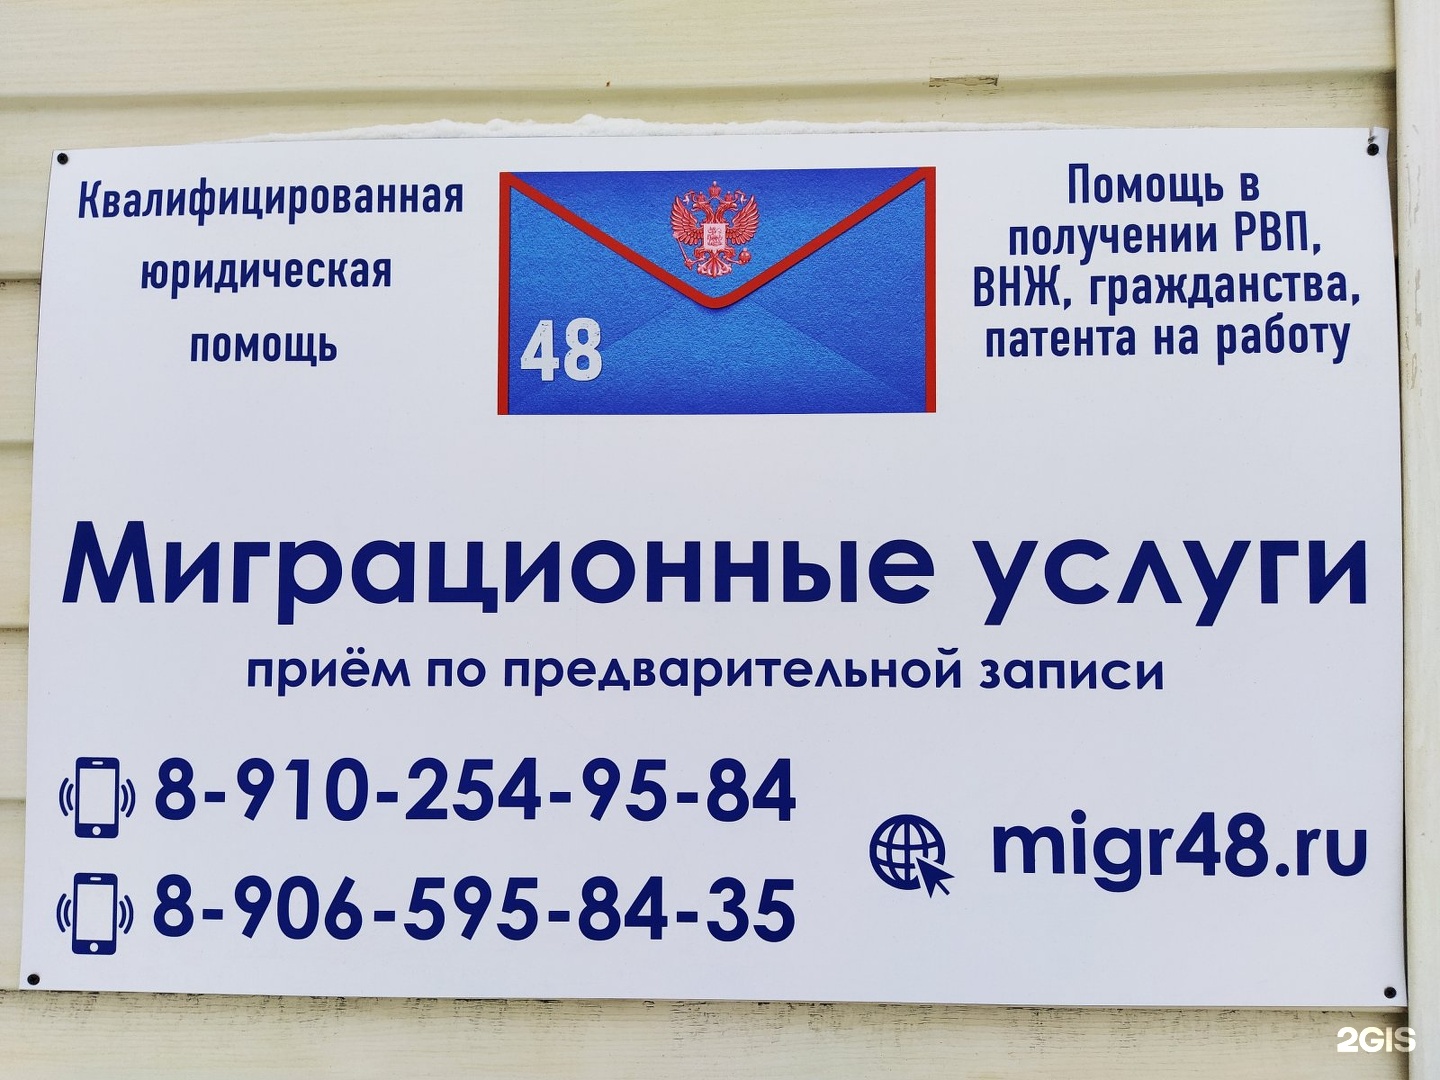 Номер телефона д центр. Одесская 48 миграционный центр. Г Краснодар ул Одесская 48 миграционный центр. Краснодар ул Одесская 48. Вывески миграционные услуг.